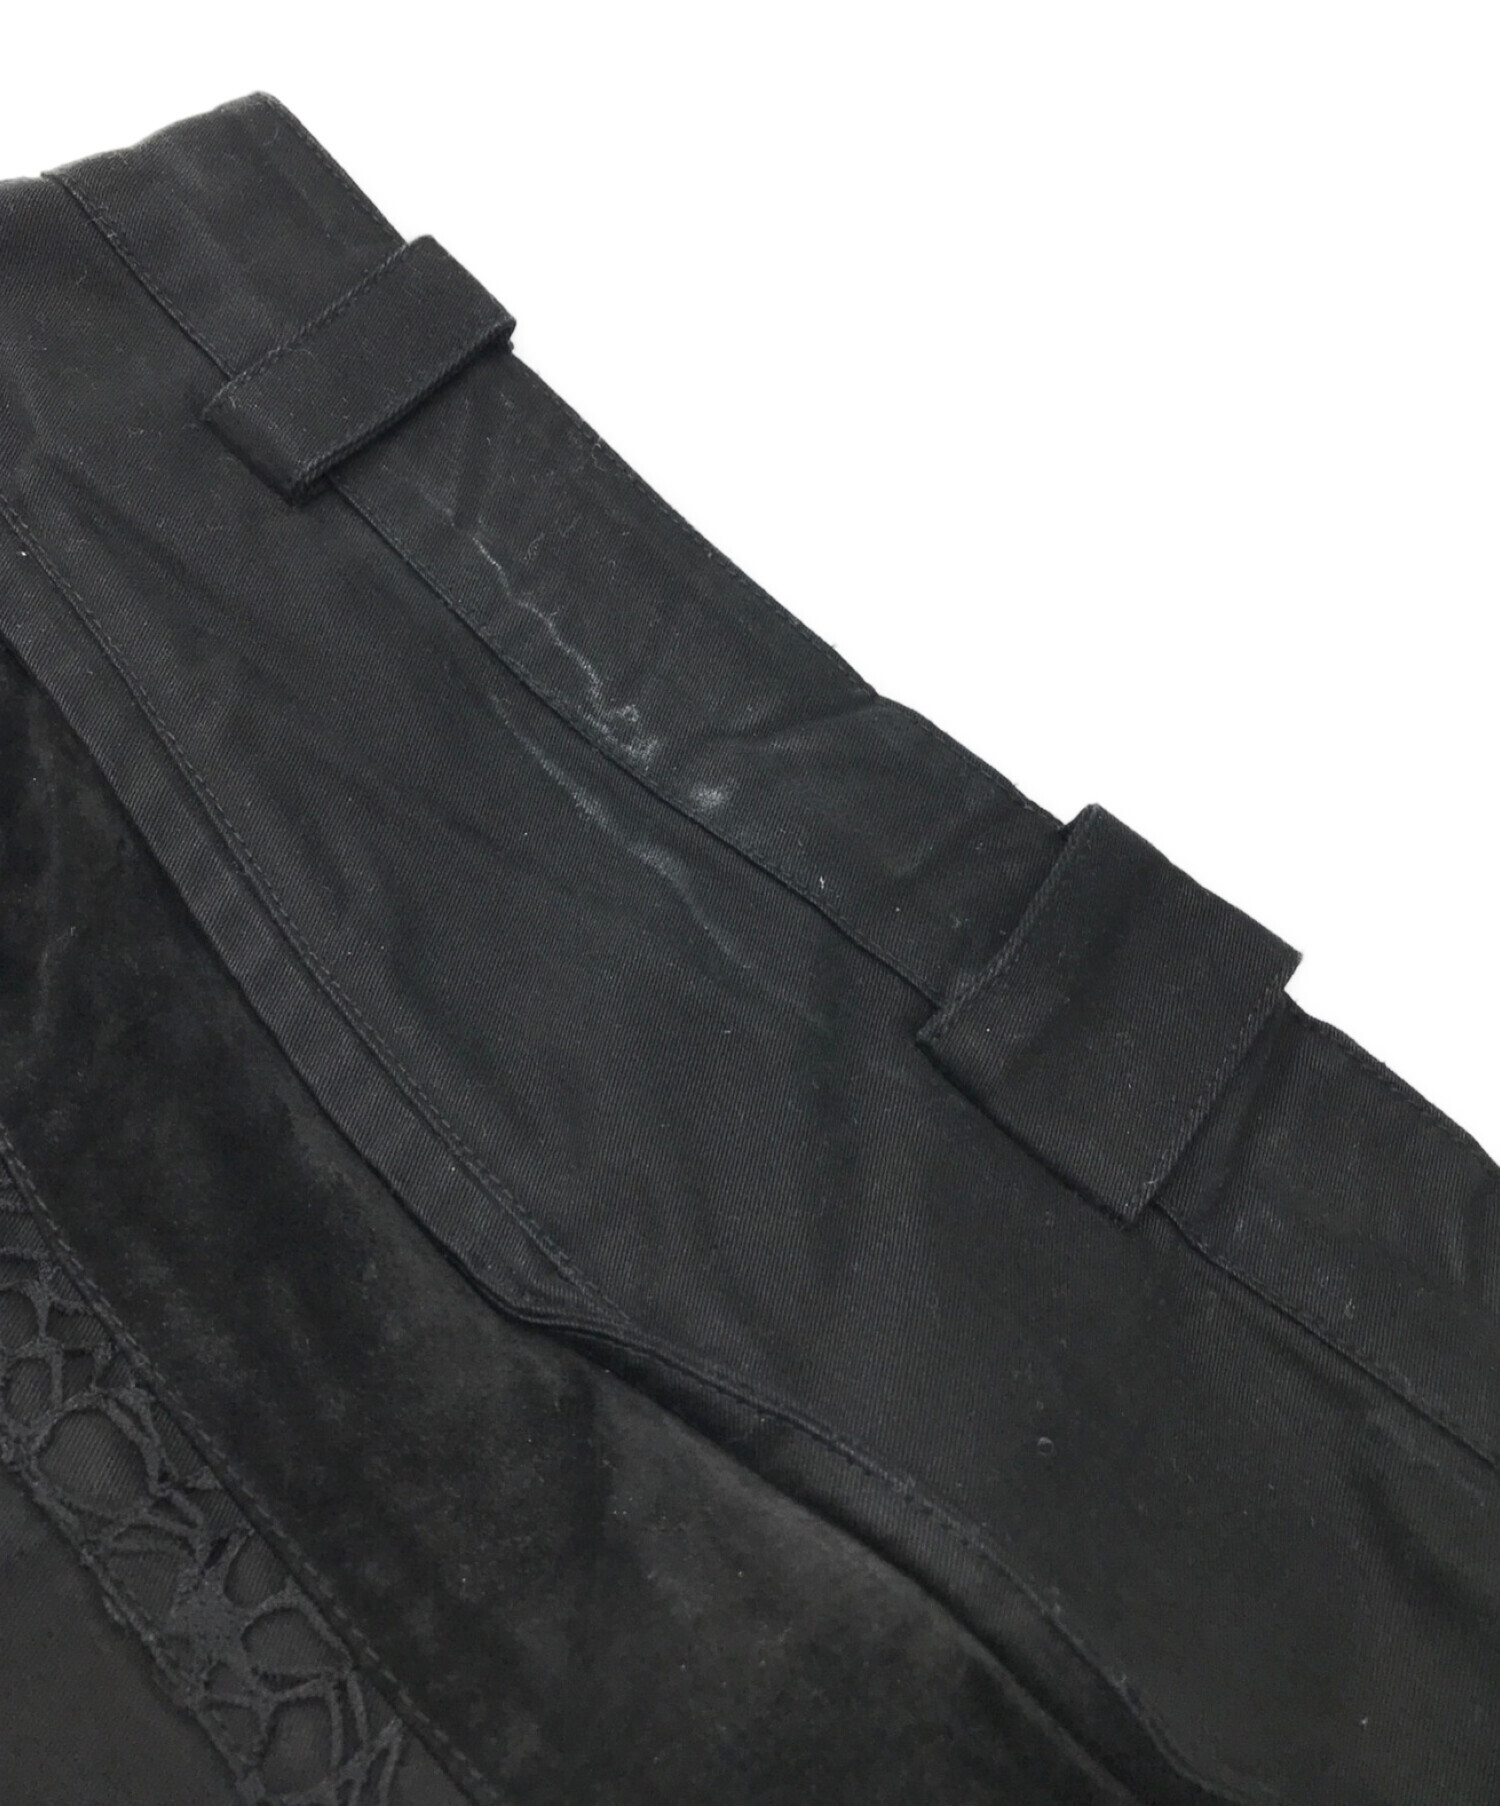 XLIM (エクスリム) パンツ ブラック サイズ:XL